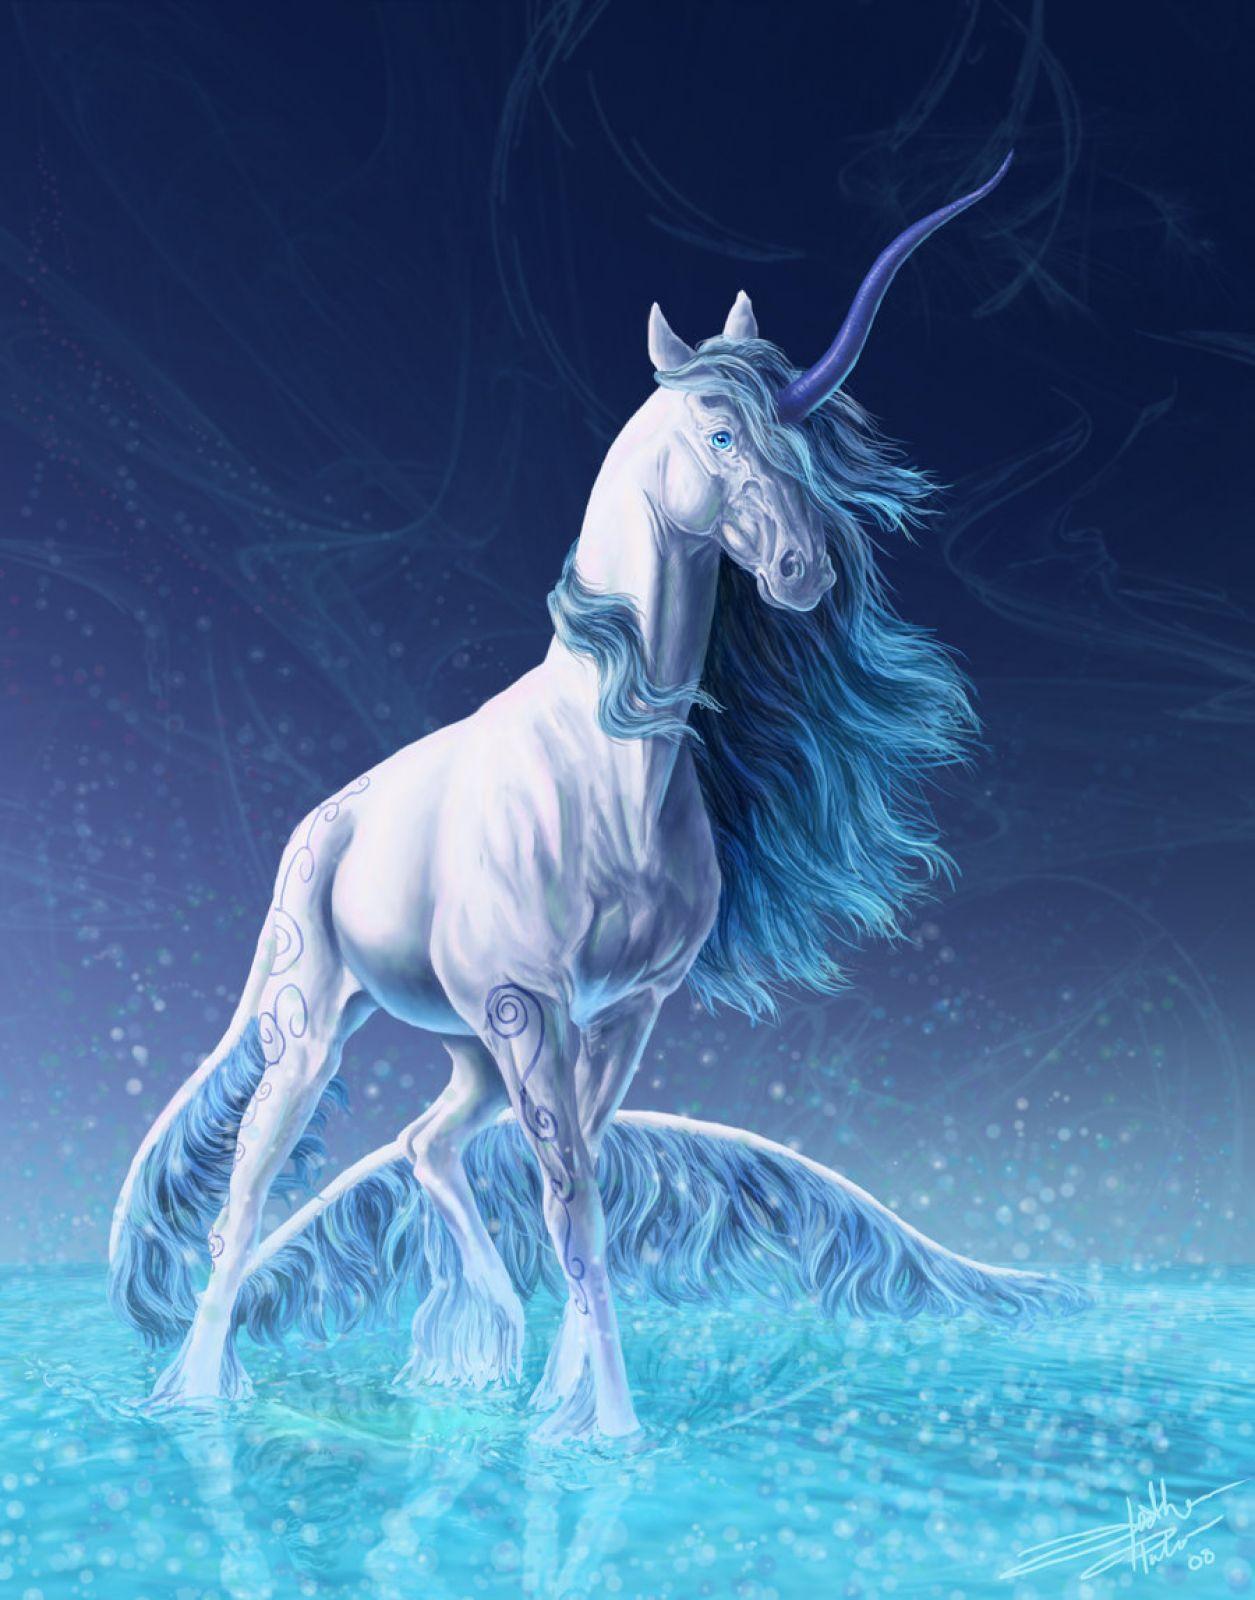 HD Unicorn Wallpaper. Fantasy creatures, Unicorn picture